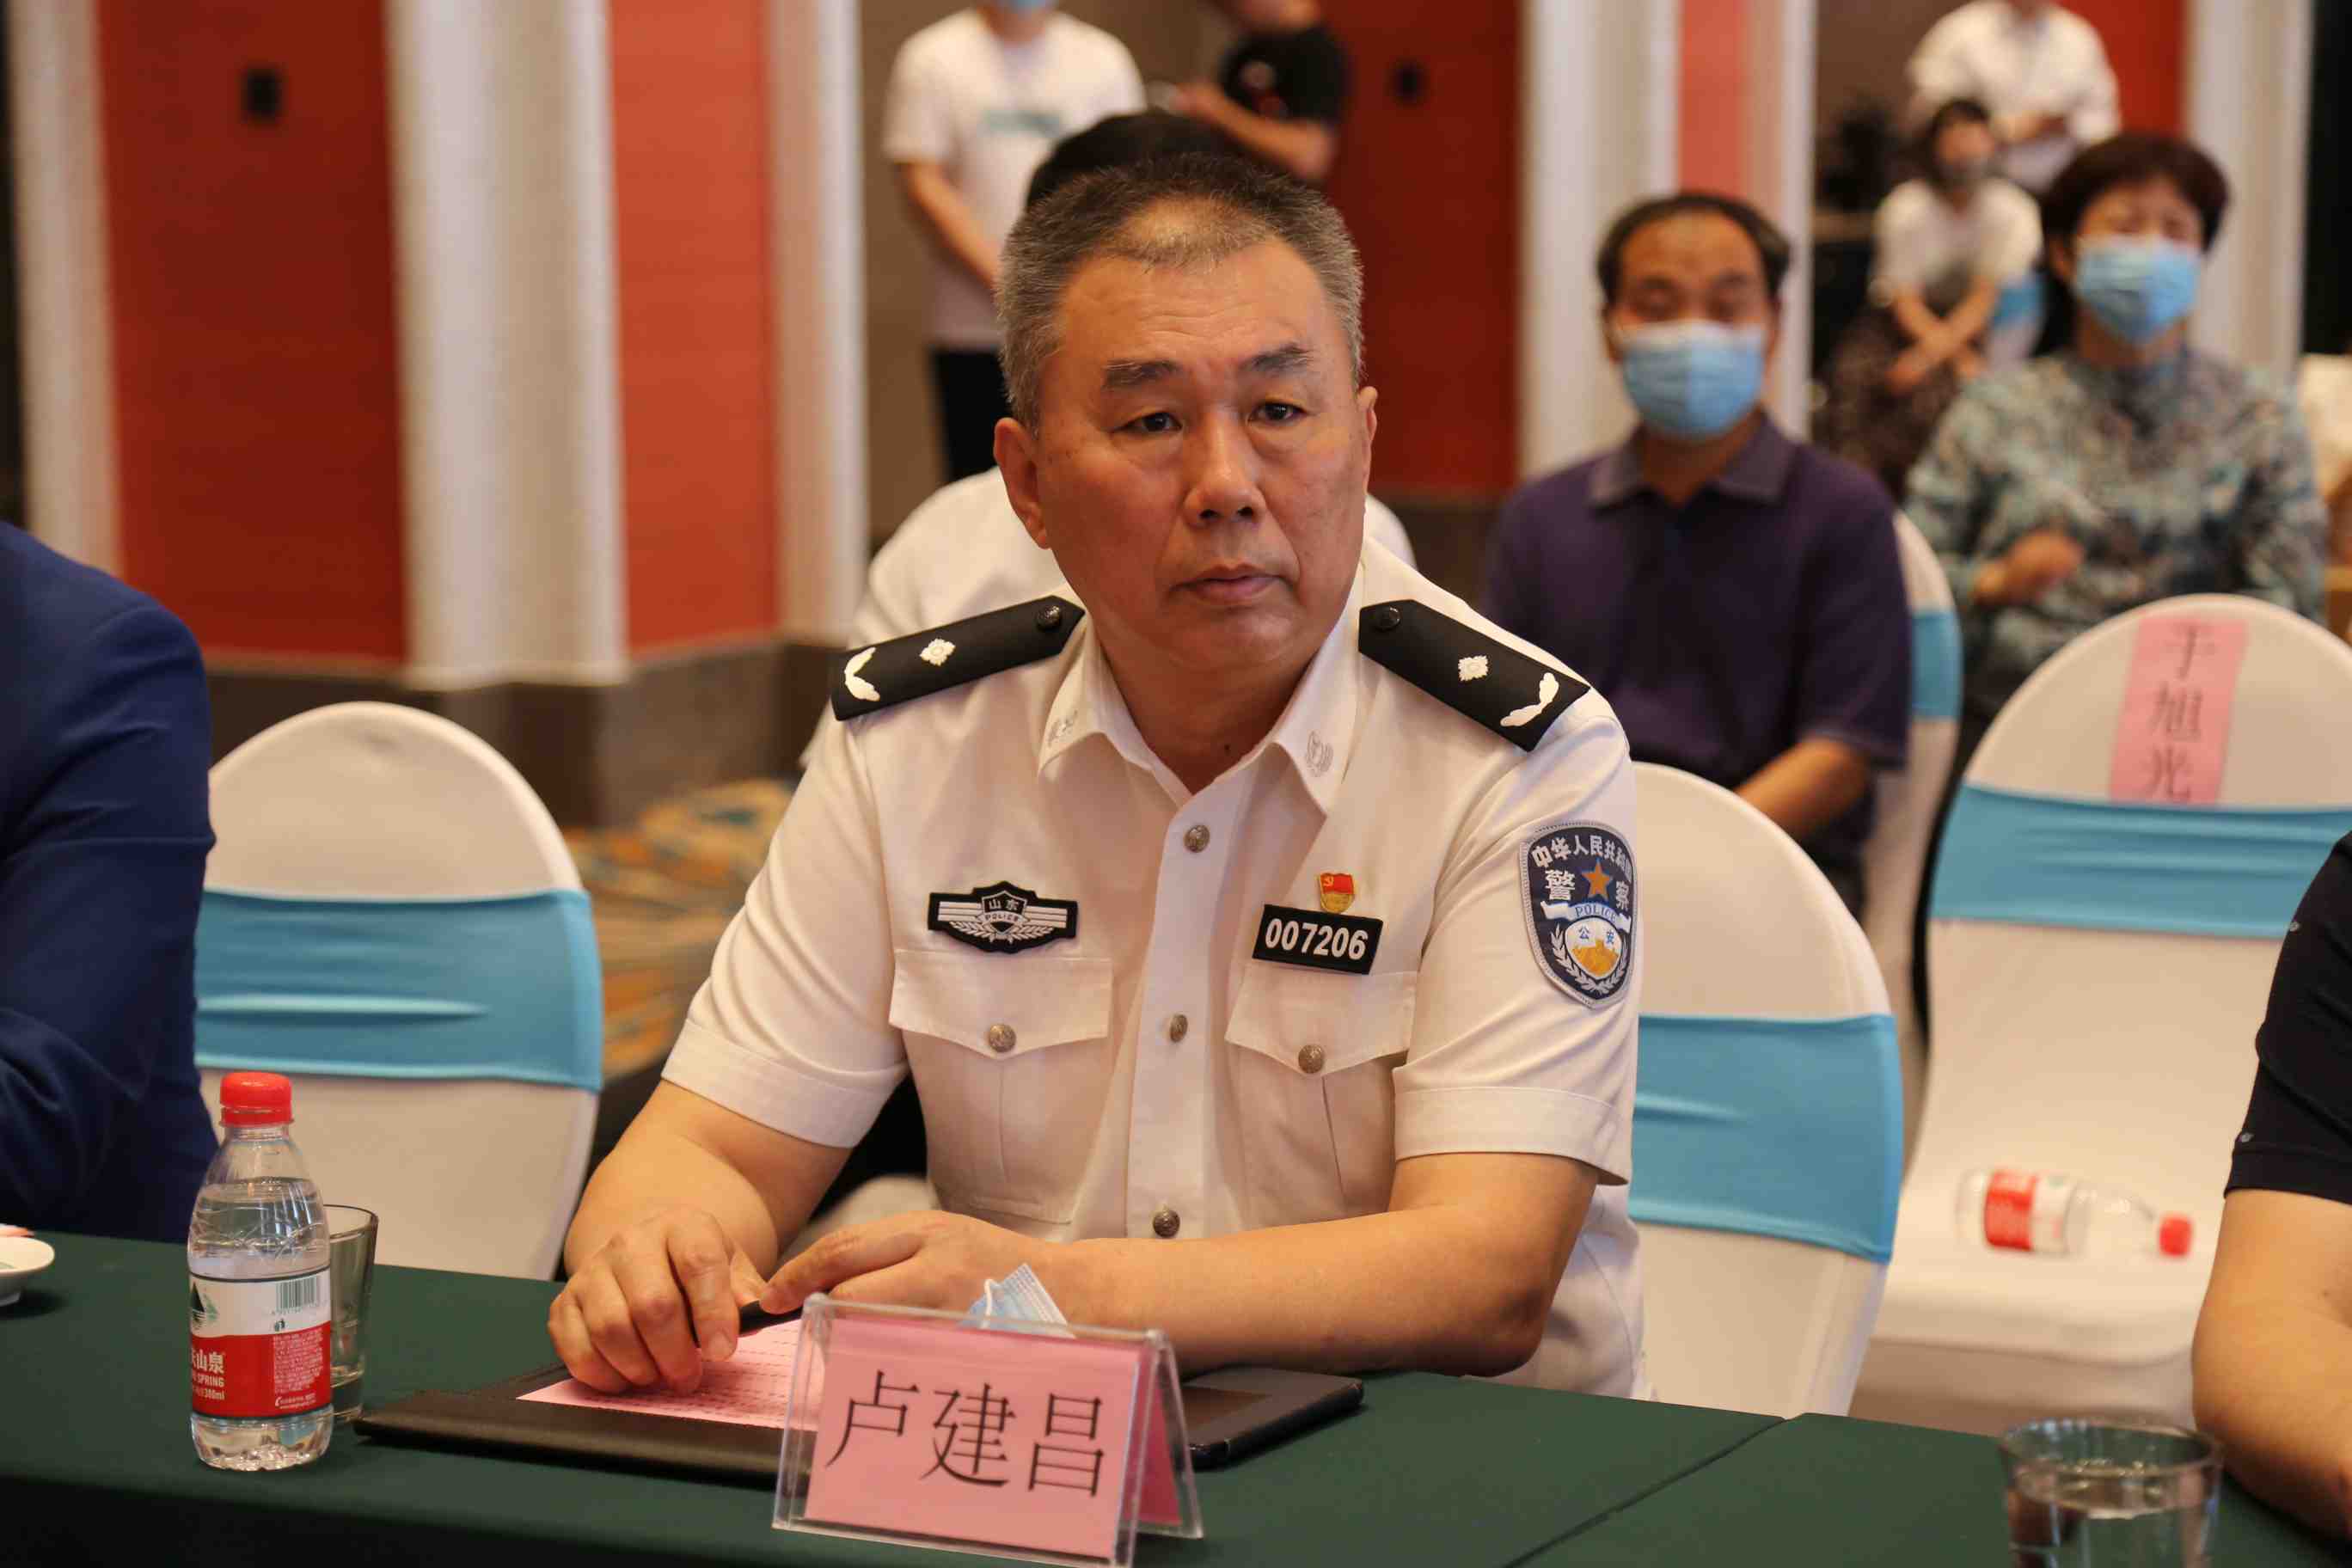 管理局副局长一级调研员武磊,济南市公安局交警支队相关领导卢建昌